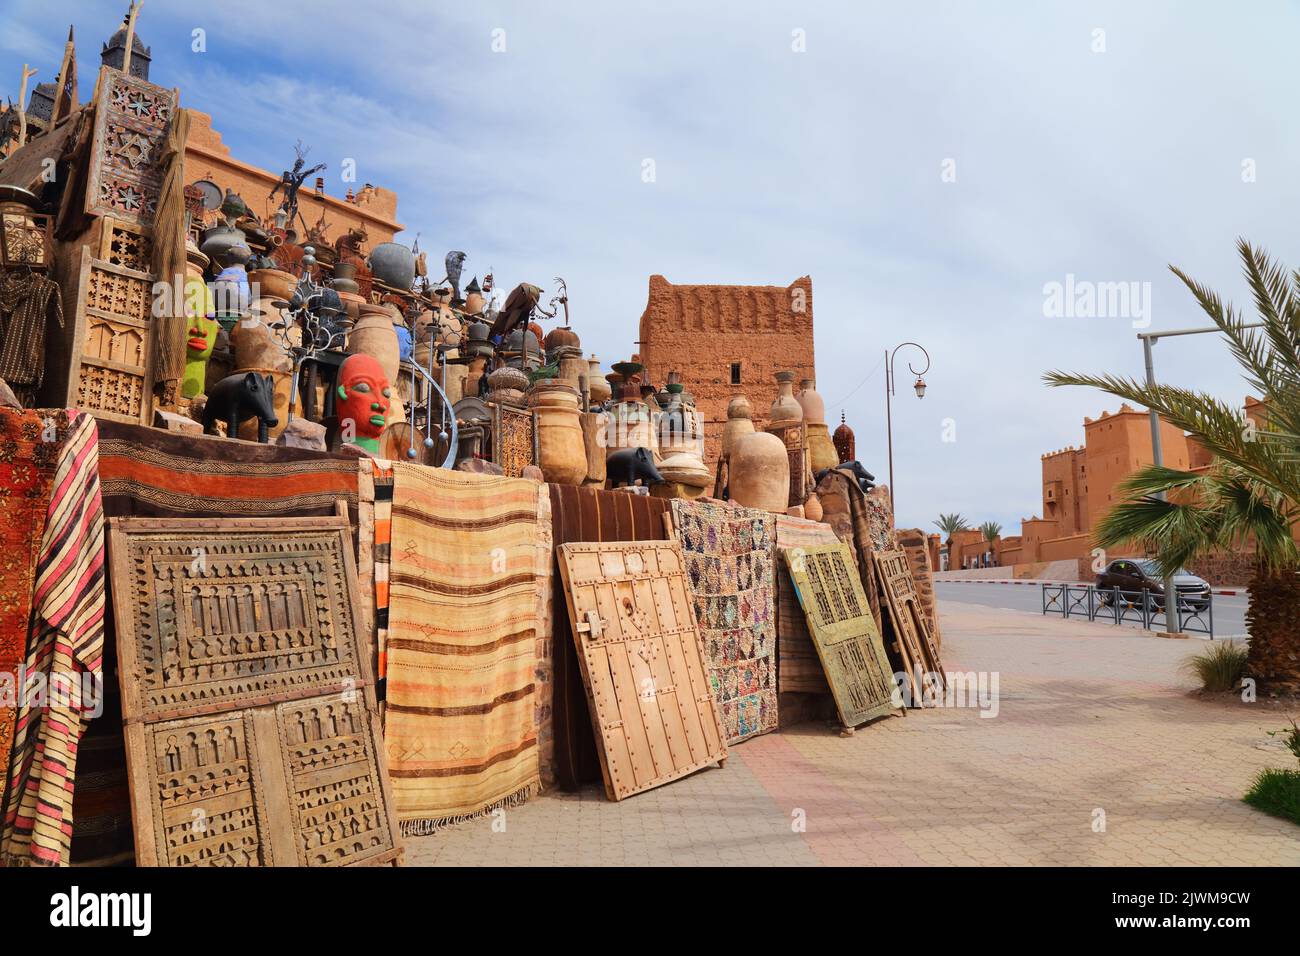 Marché de rue Ouarzazate produits anciens et artisanaux au Maroc. Marché aux puces marocain souk. Banque D'Images